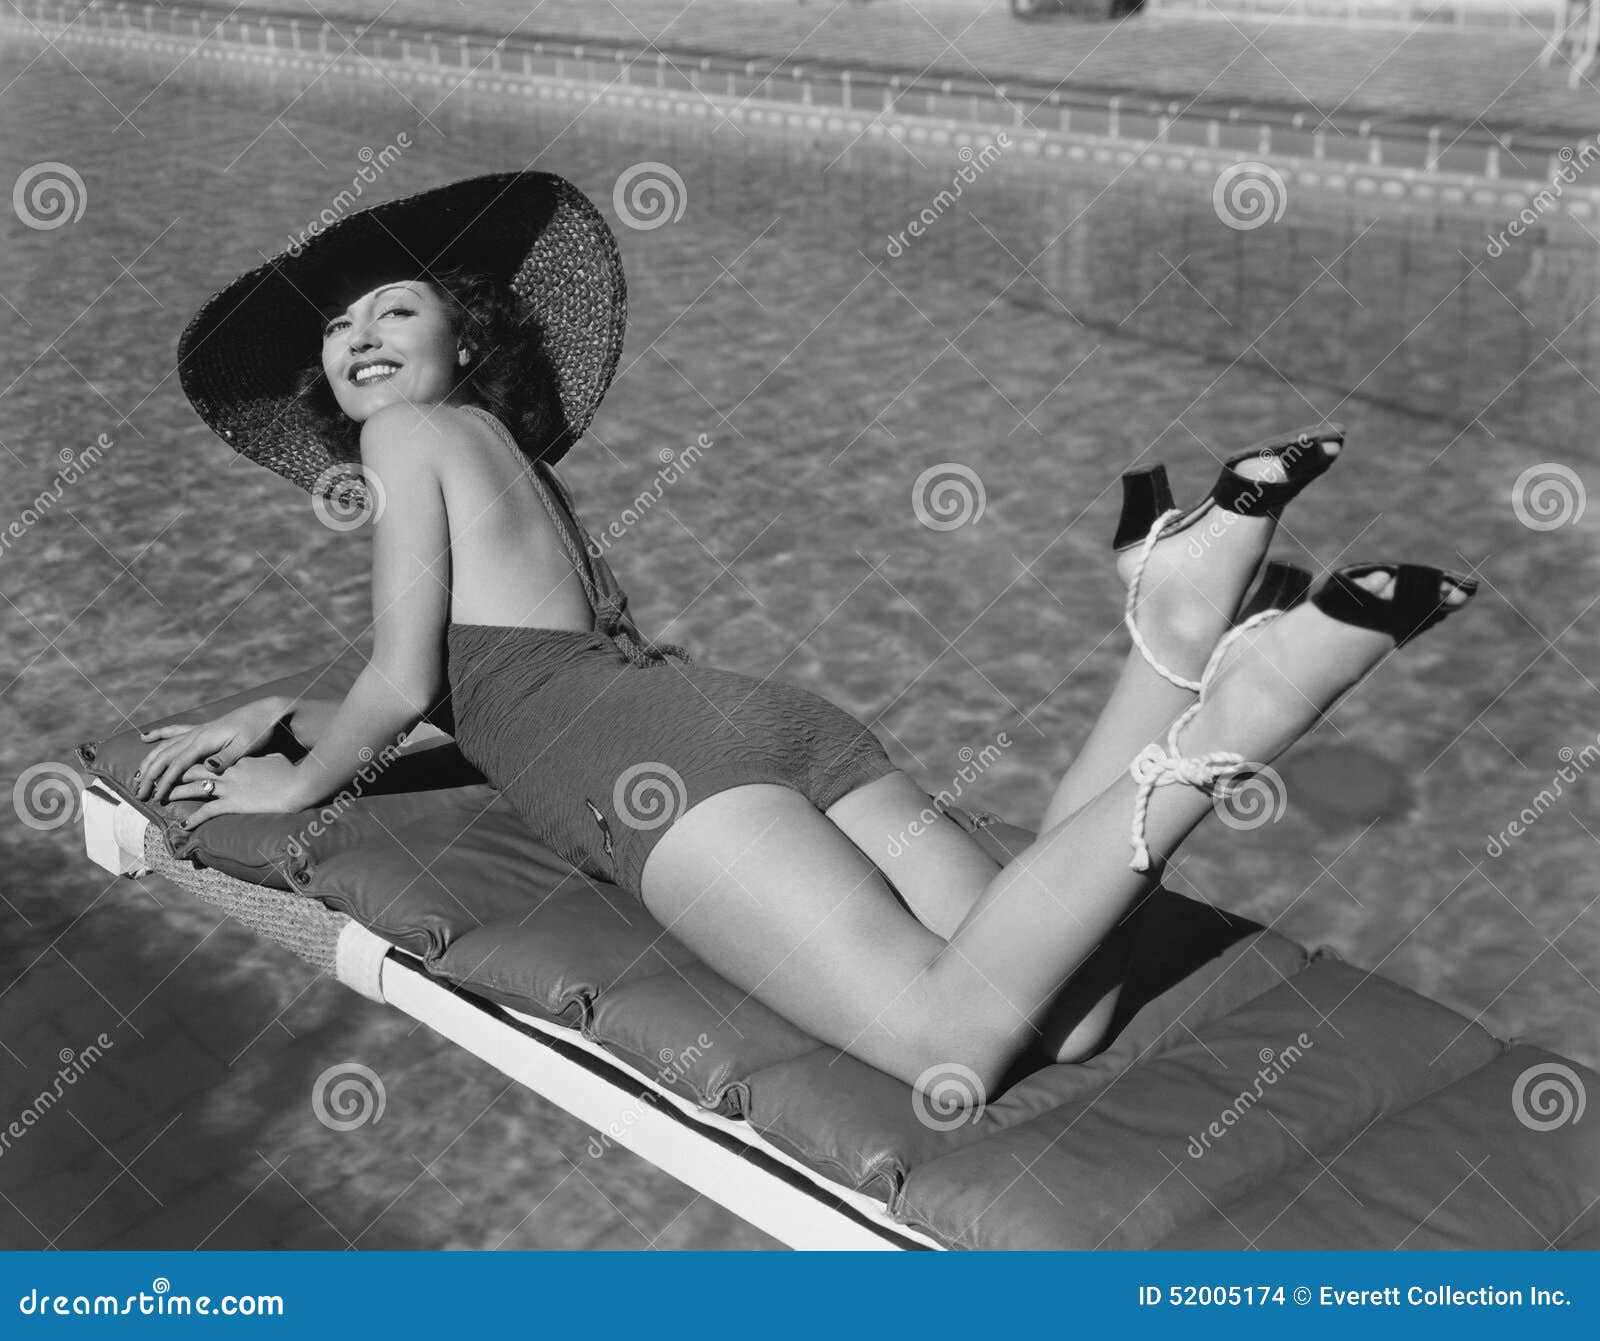 woman sunbathing at pool